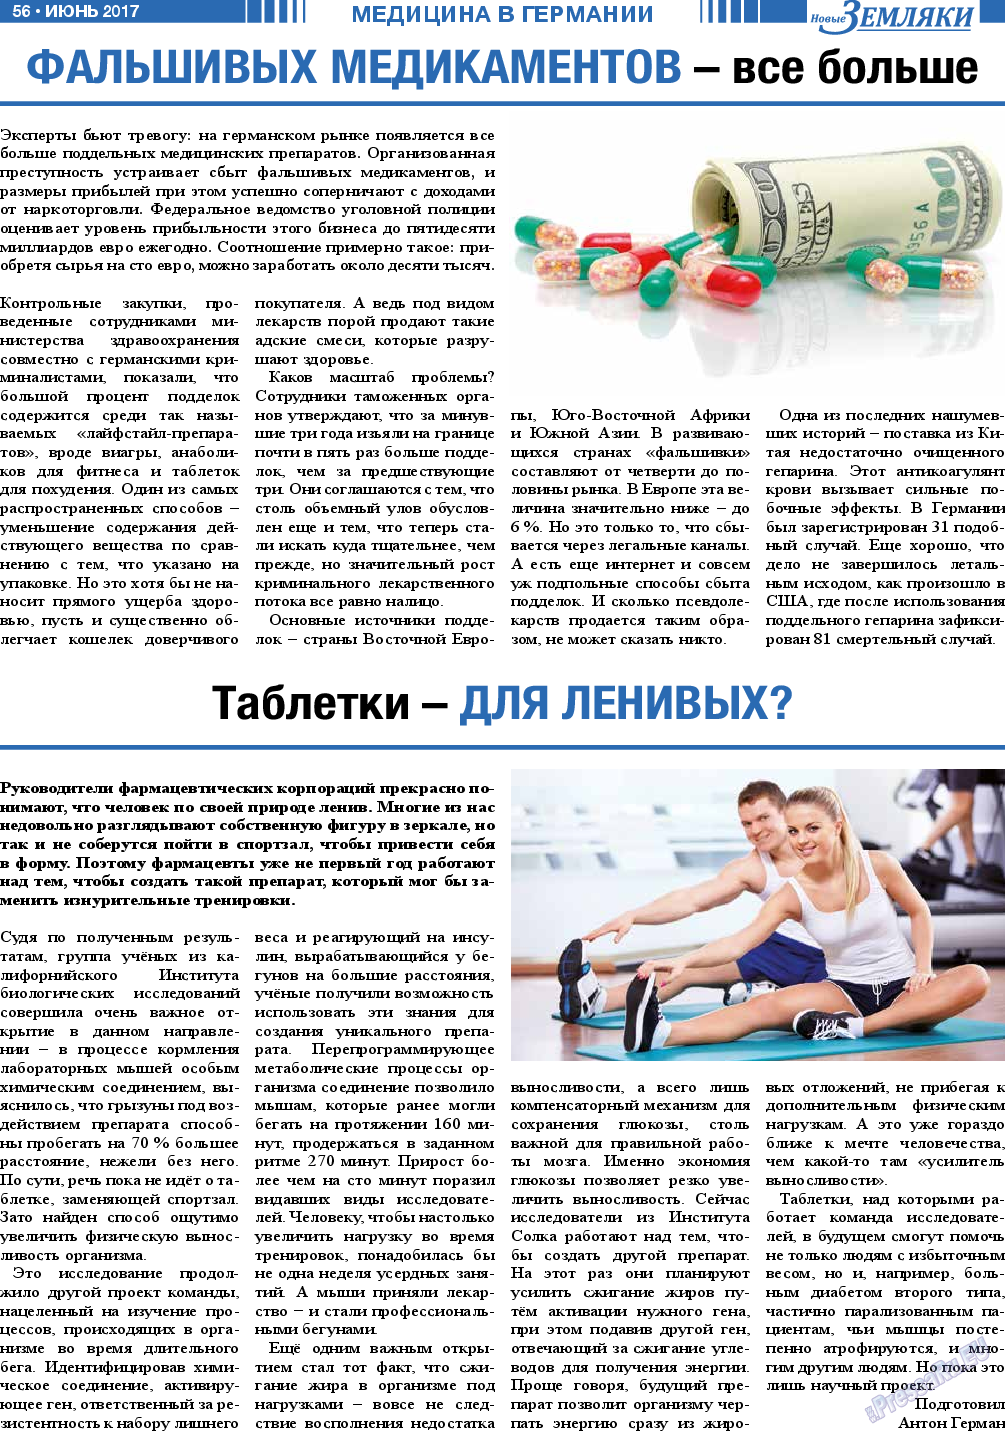 Новые Земляки, газета. 2017 №6 стр.56